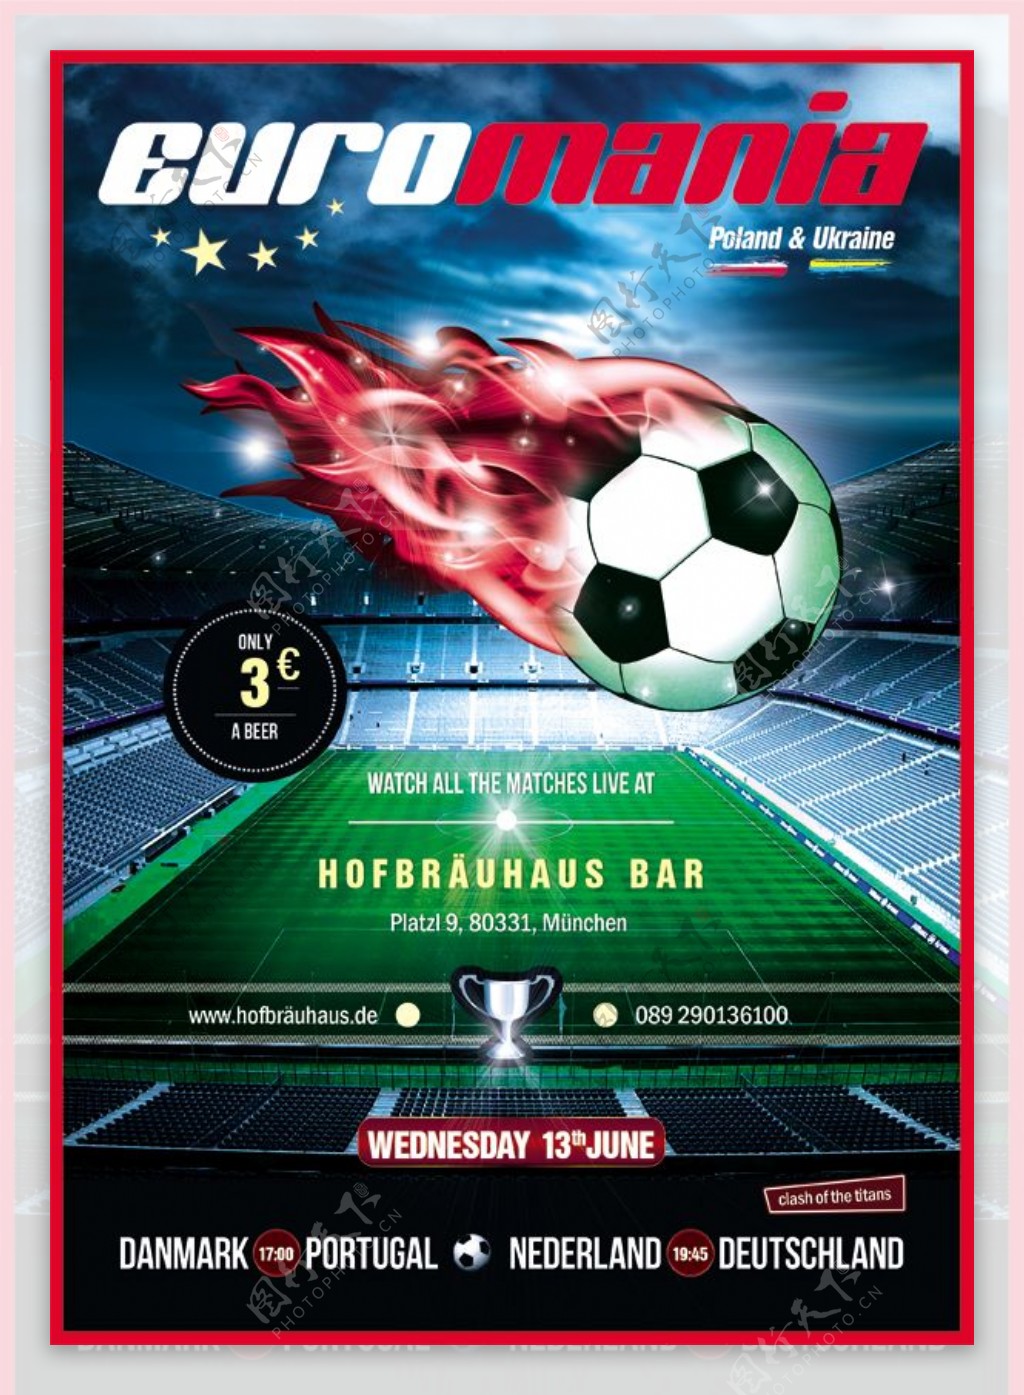 世界杯足球比赛海报